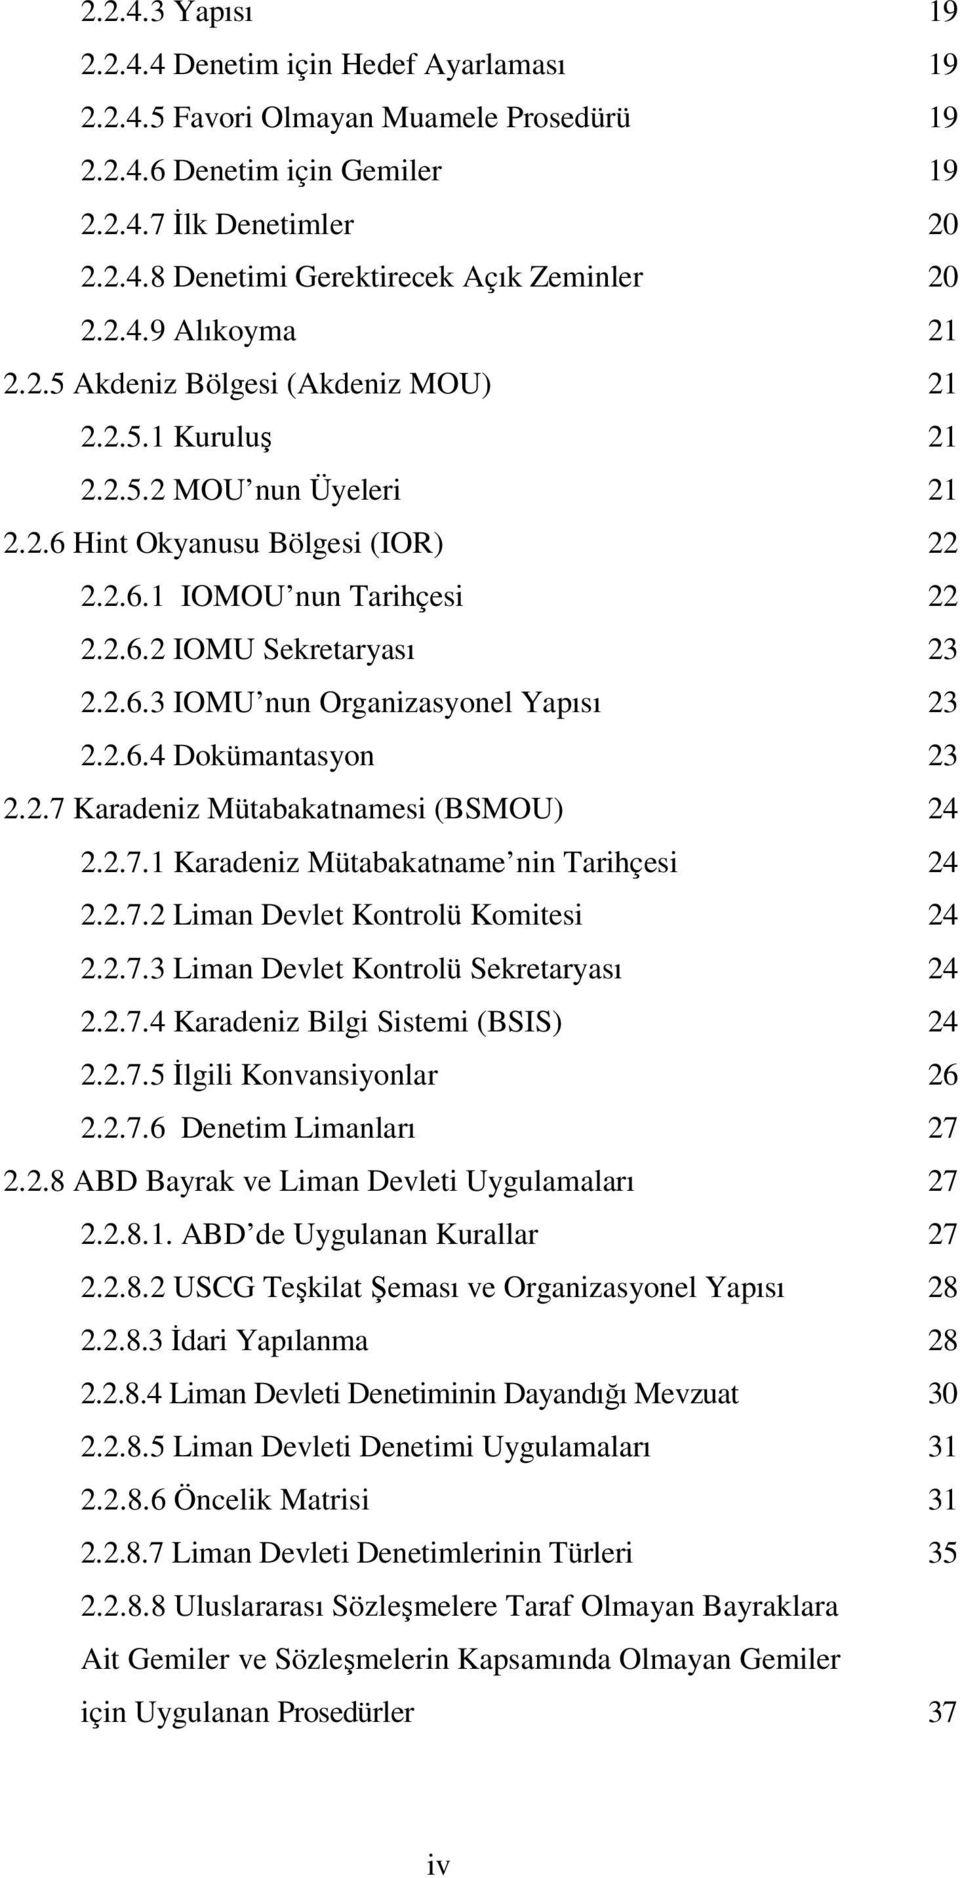 2.6.3 IOMU nun Organizasyonel Yapısı 23 2.2.6.4 Dokümantasyon 23 2.2.7 Karadeniz Mütabakatnamesi (BSMOU) 24 2.2.7.1 Karadeniz Mütabakatname nin Tarihçesi 24 2.2.7.2 Liman Devlet Kontrolü Komitesi 24 2.